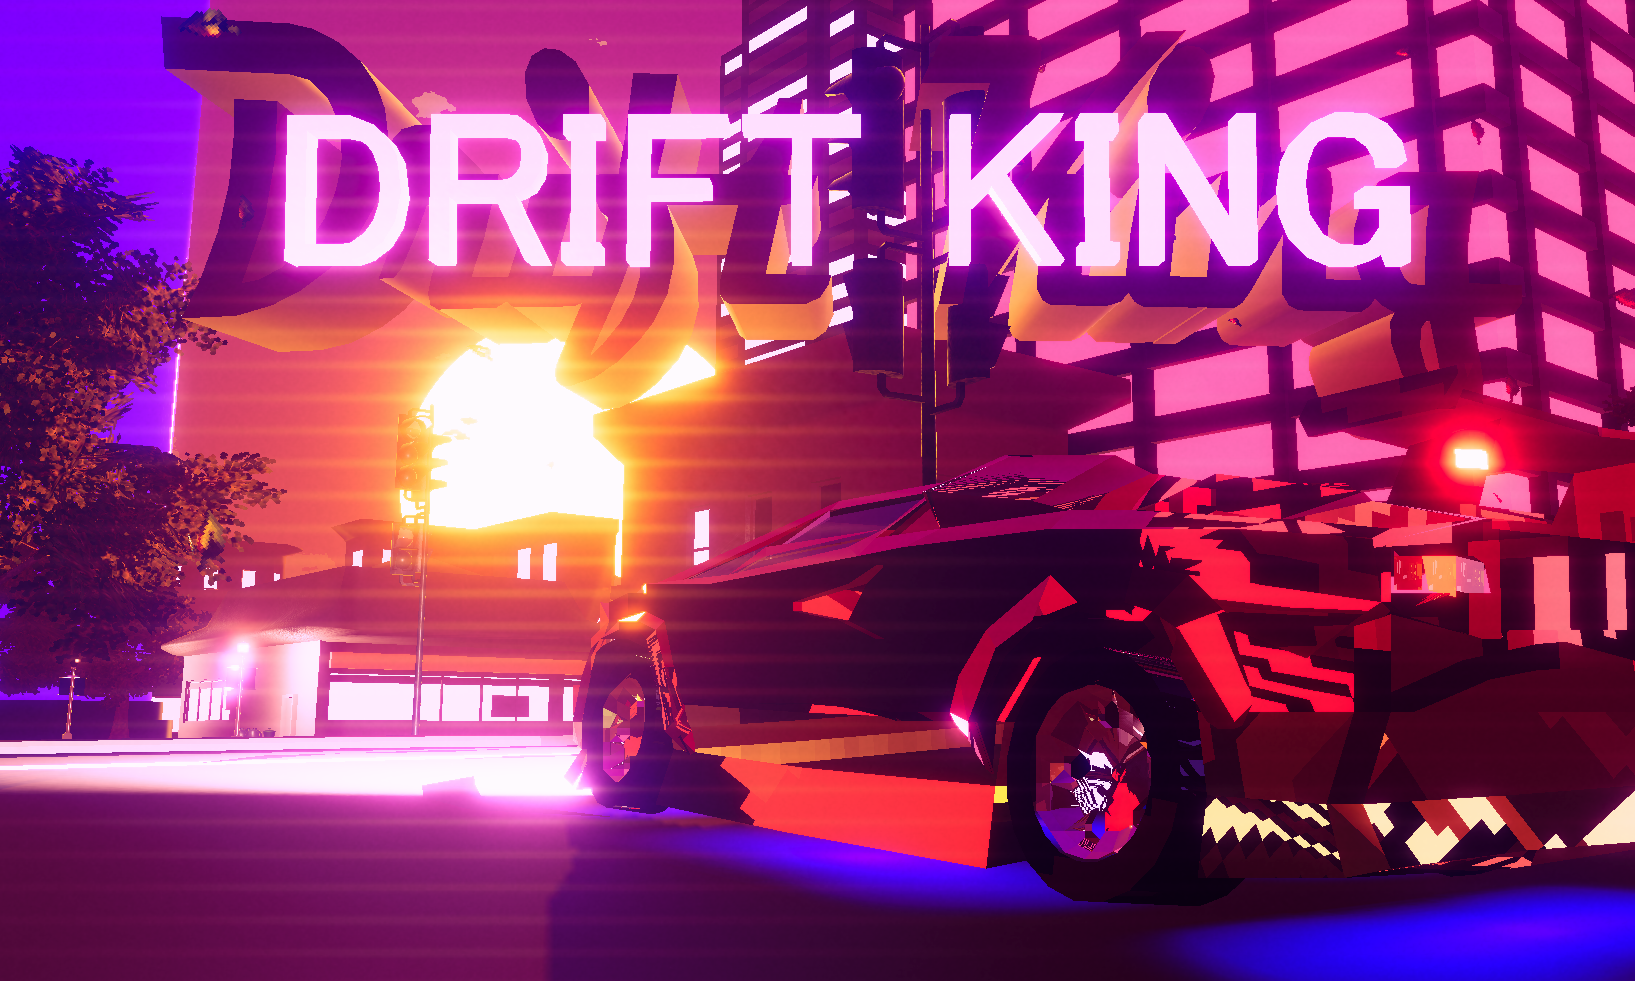 King of drift online games 